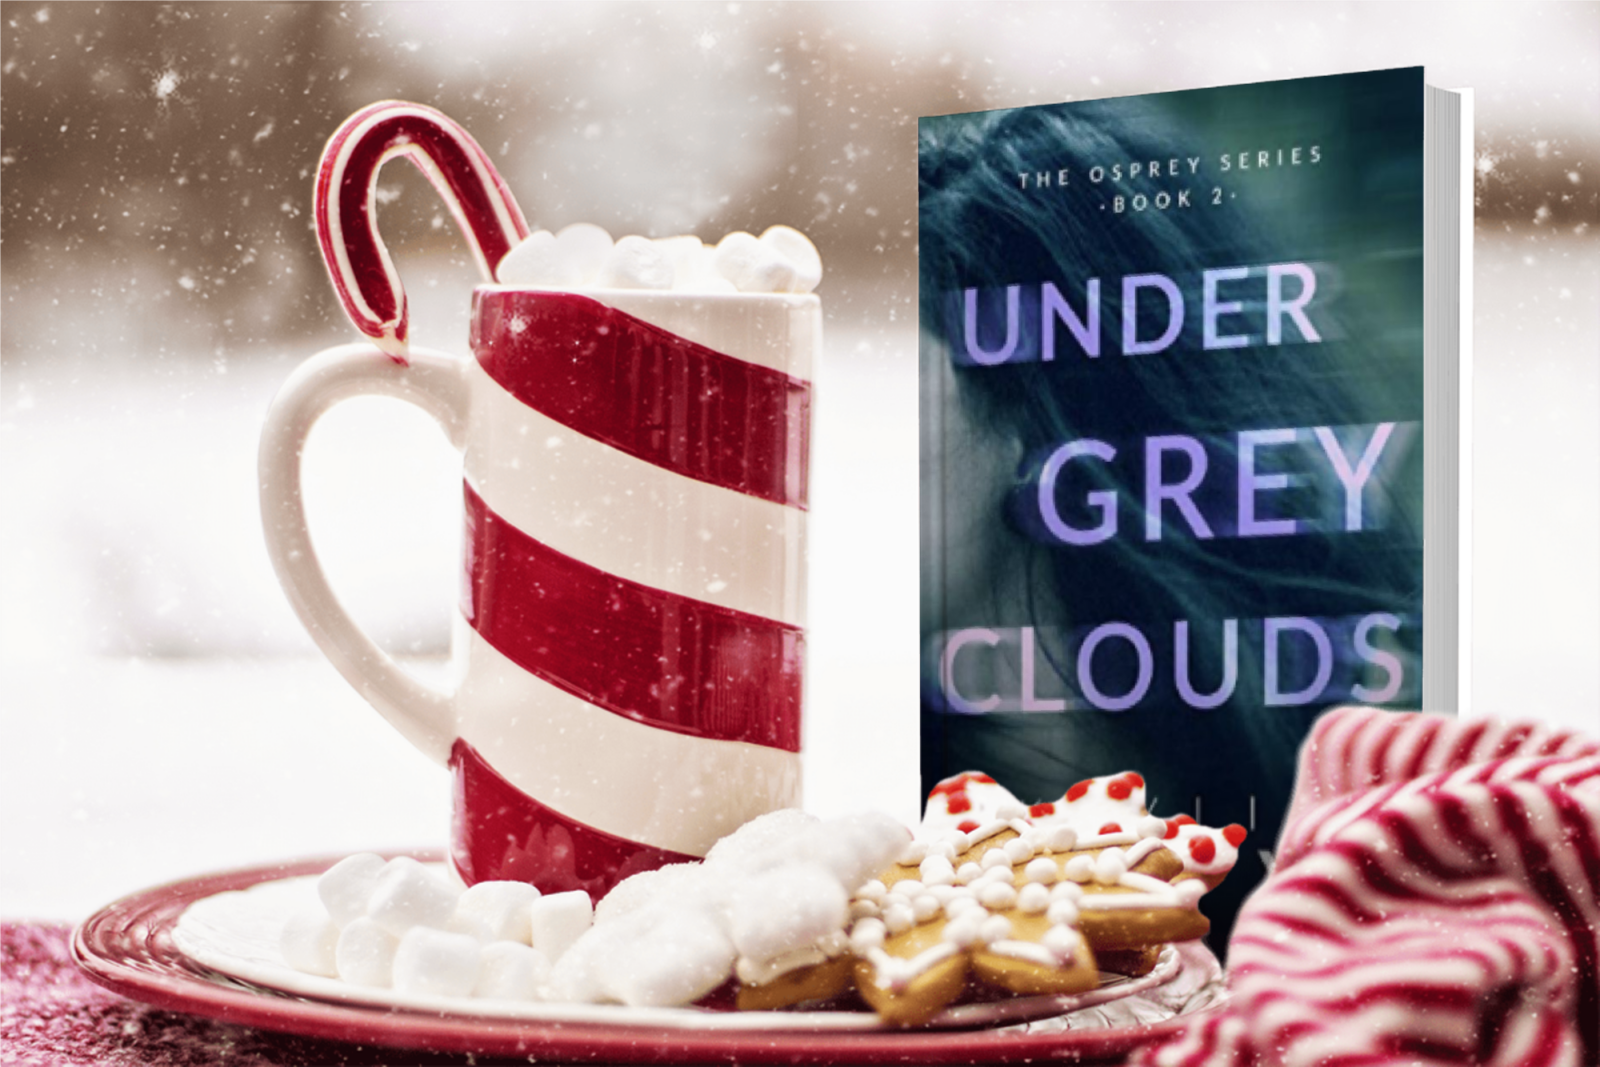 Kaylie Kay:  'Under Grey Clouds'